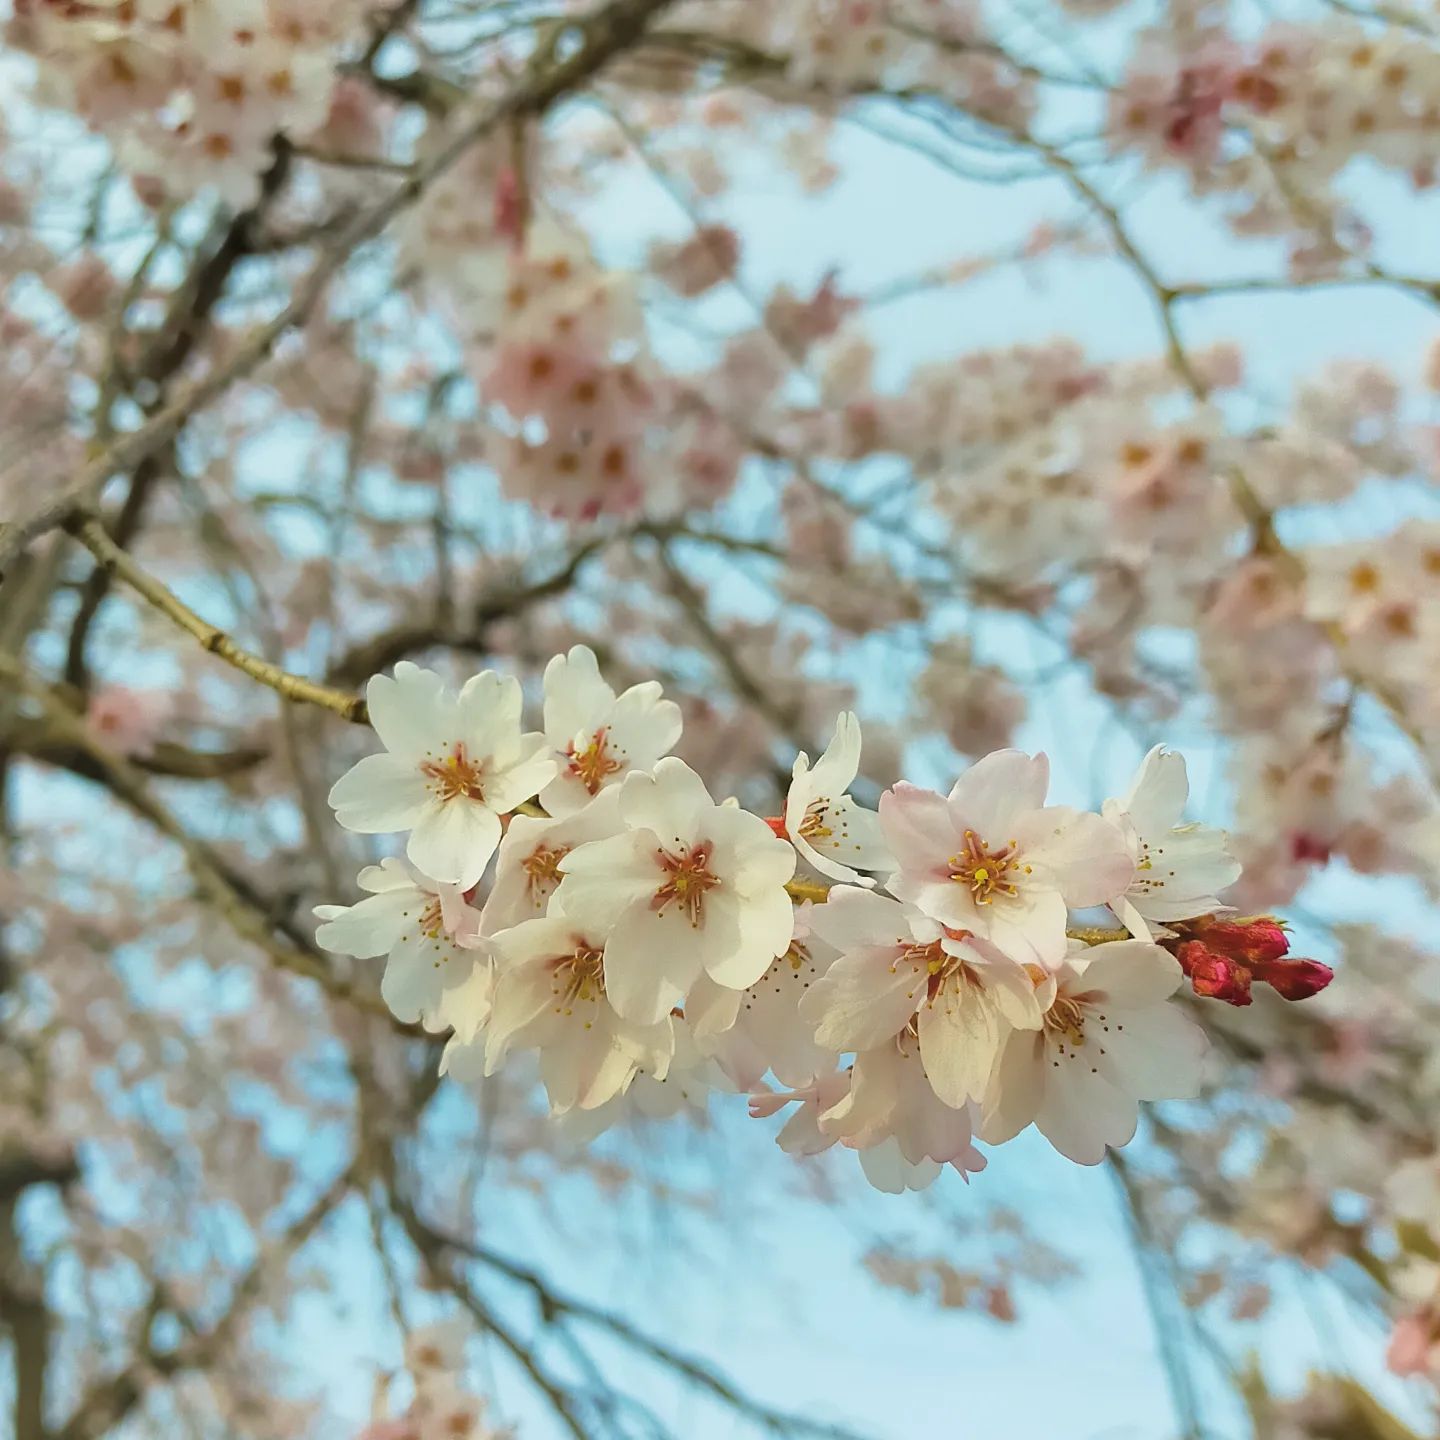 あおう人形展示場隣の桜- from Instagram